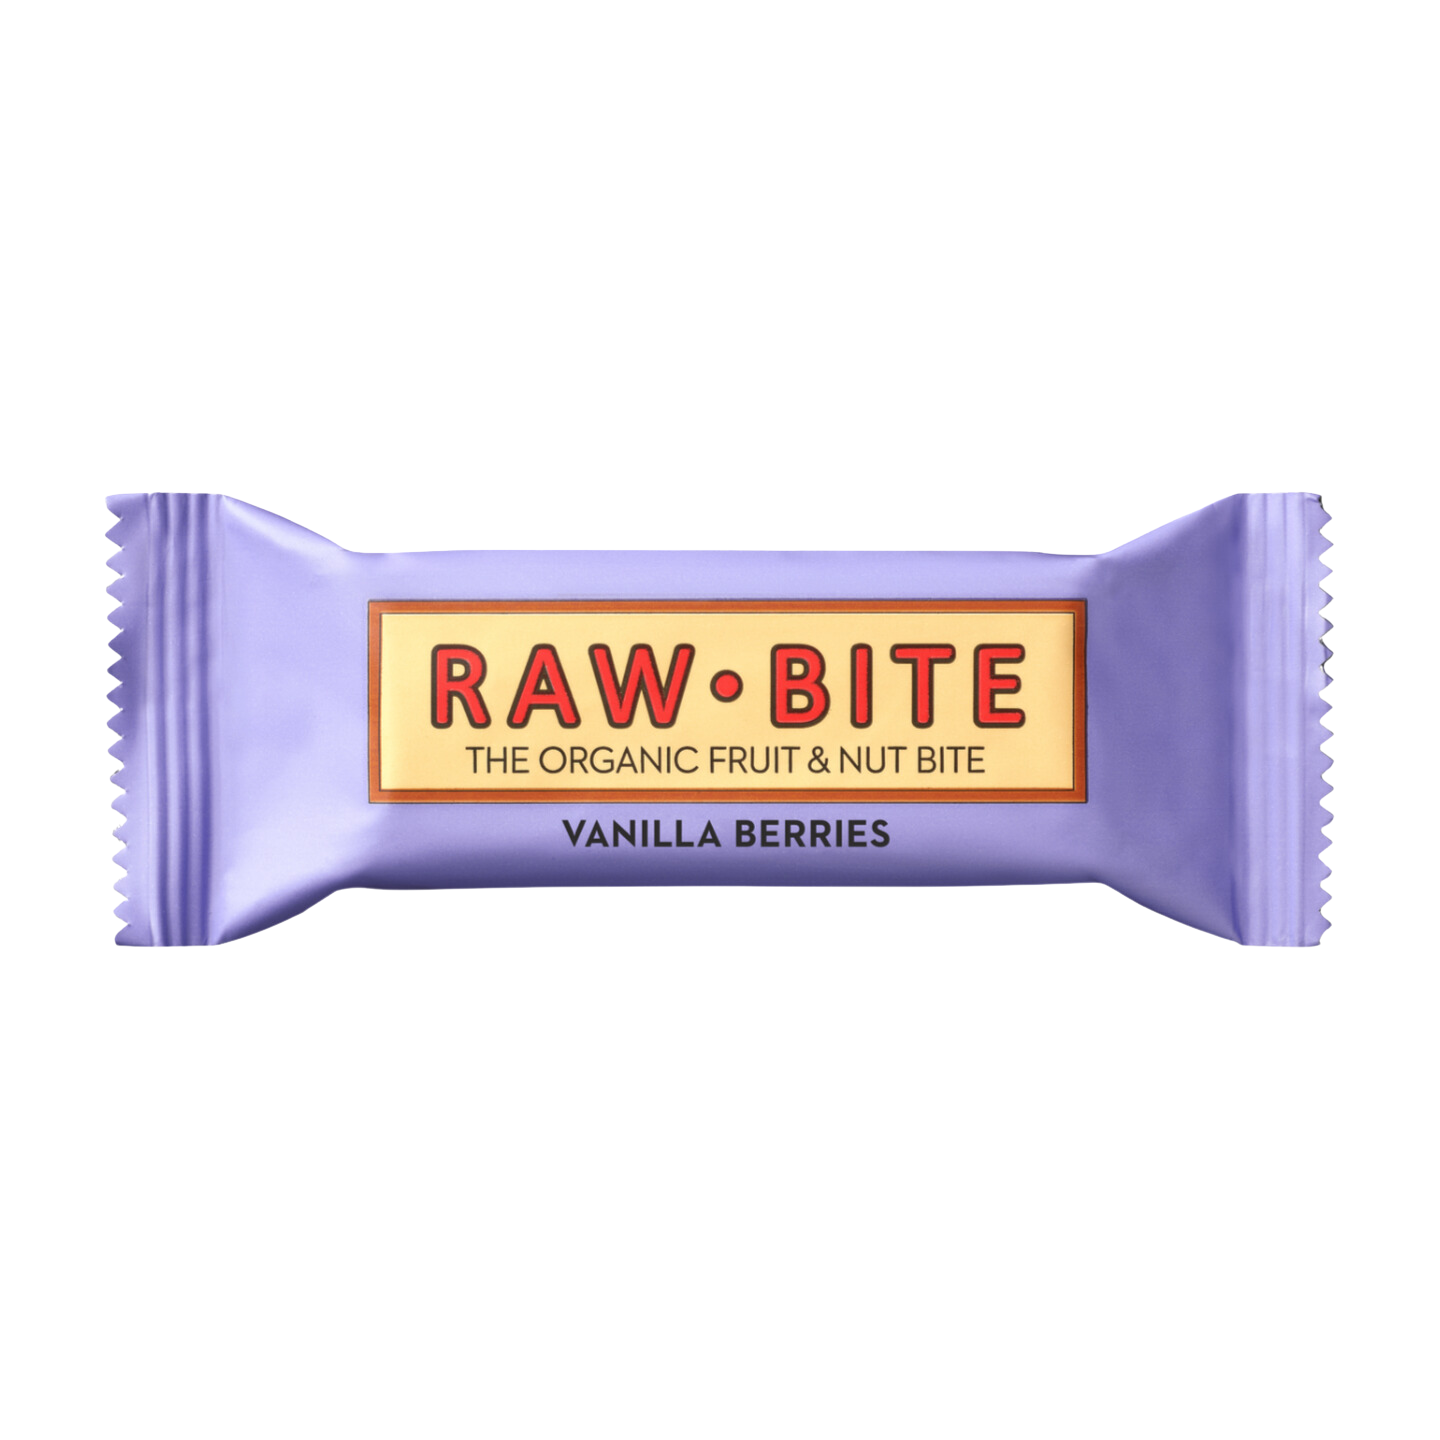 Rawbite Bar with berries and vanilla